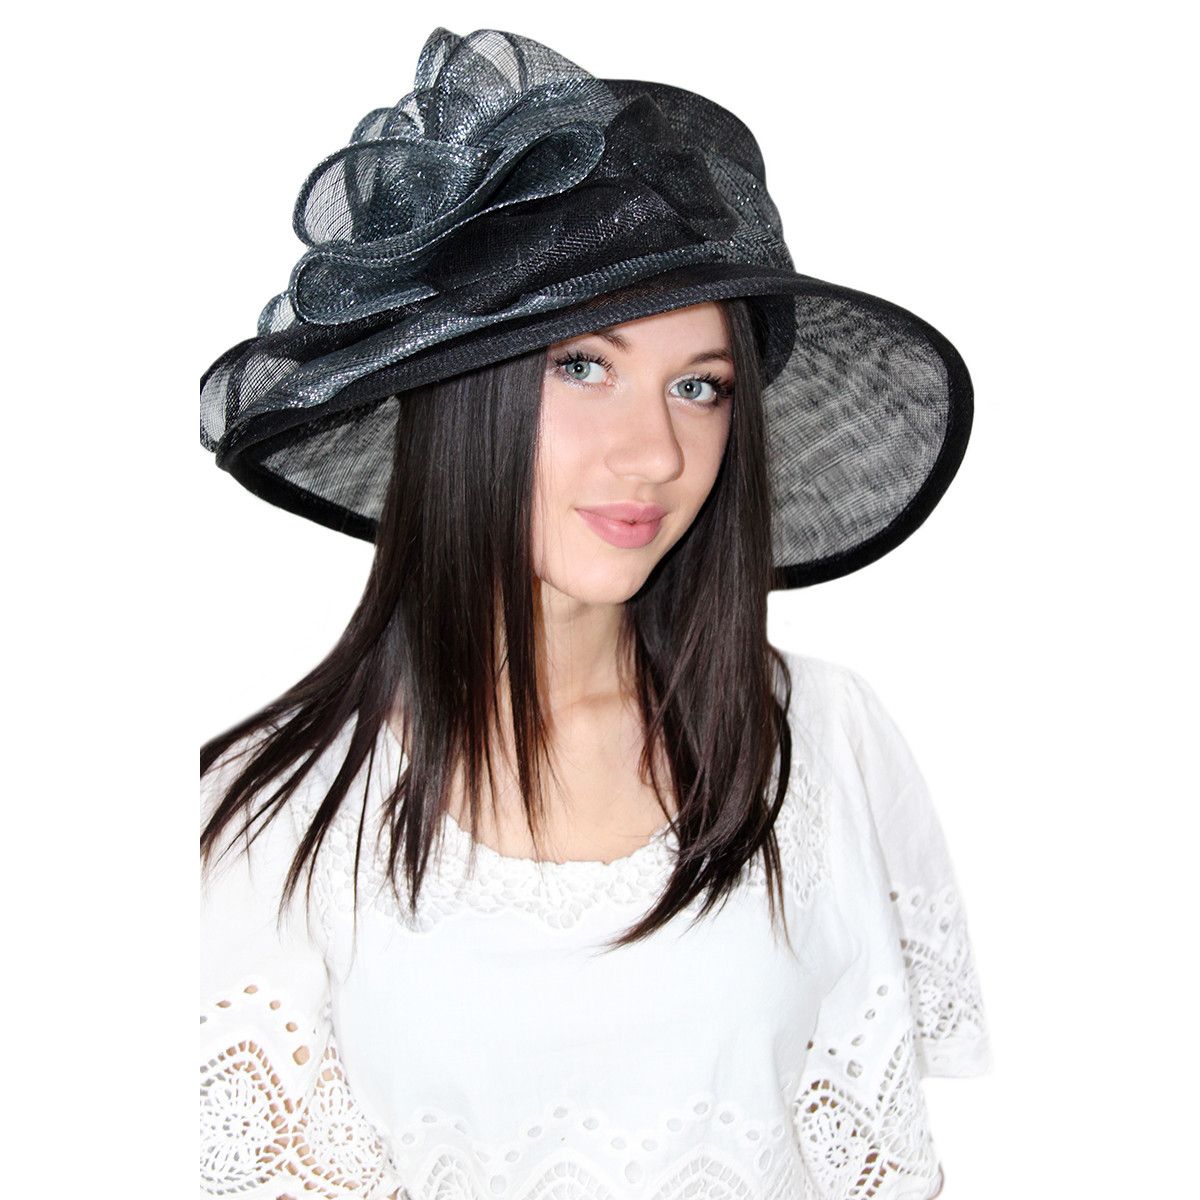 Купить шляпу в интернет магазине. Шляпа женская. Шляпка летняя черная. Кружевная шляпка. Черная шляпка женская.